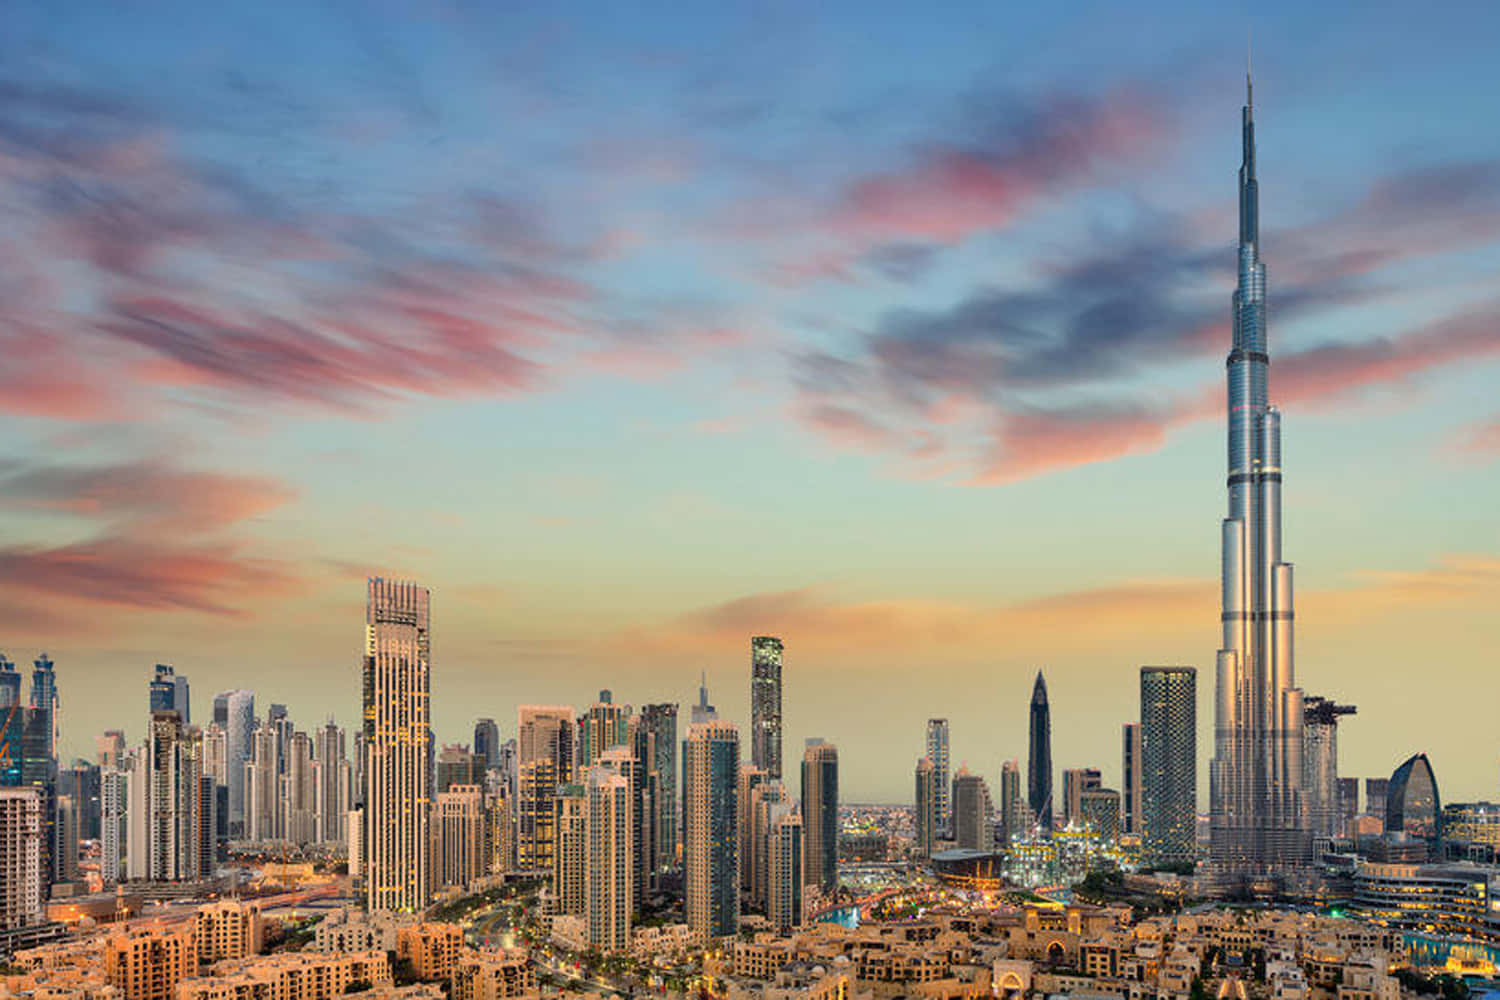 The futuristic cityscape of Dubai, UAE